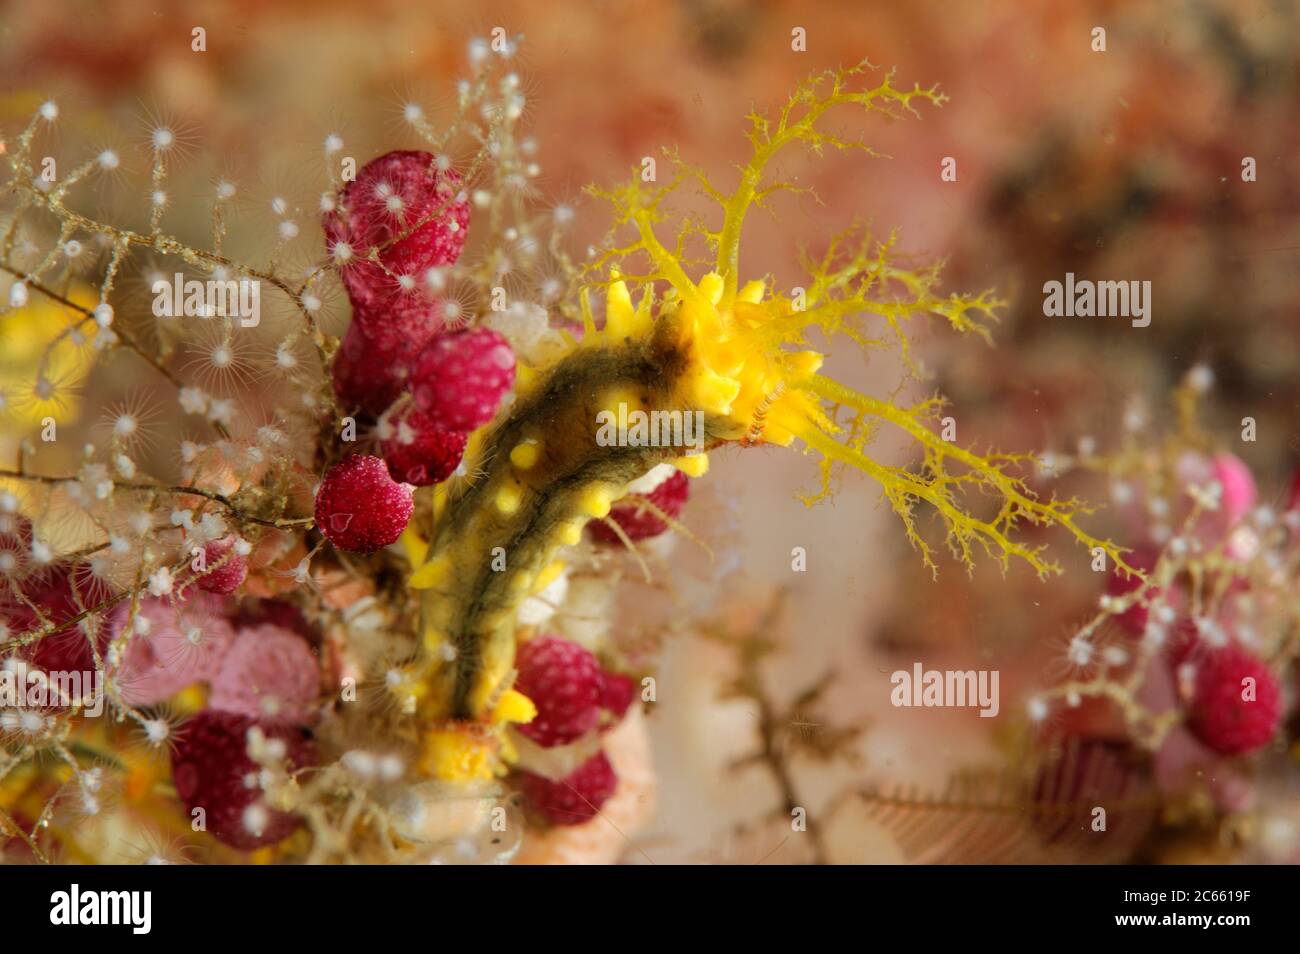 Gelbe Seegurken (Colochirus robustus). Raja Ampat, West Papua, Indonesien, Pazifischer Ozean [Größe eines einzelnen Organismus: 4 cm] Stockfoto